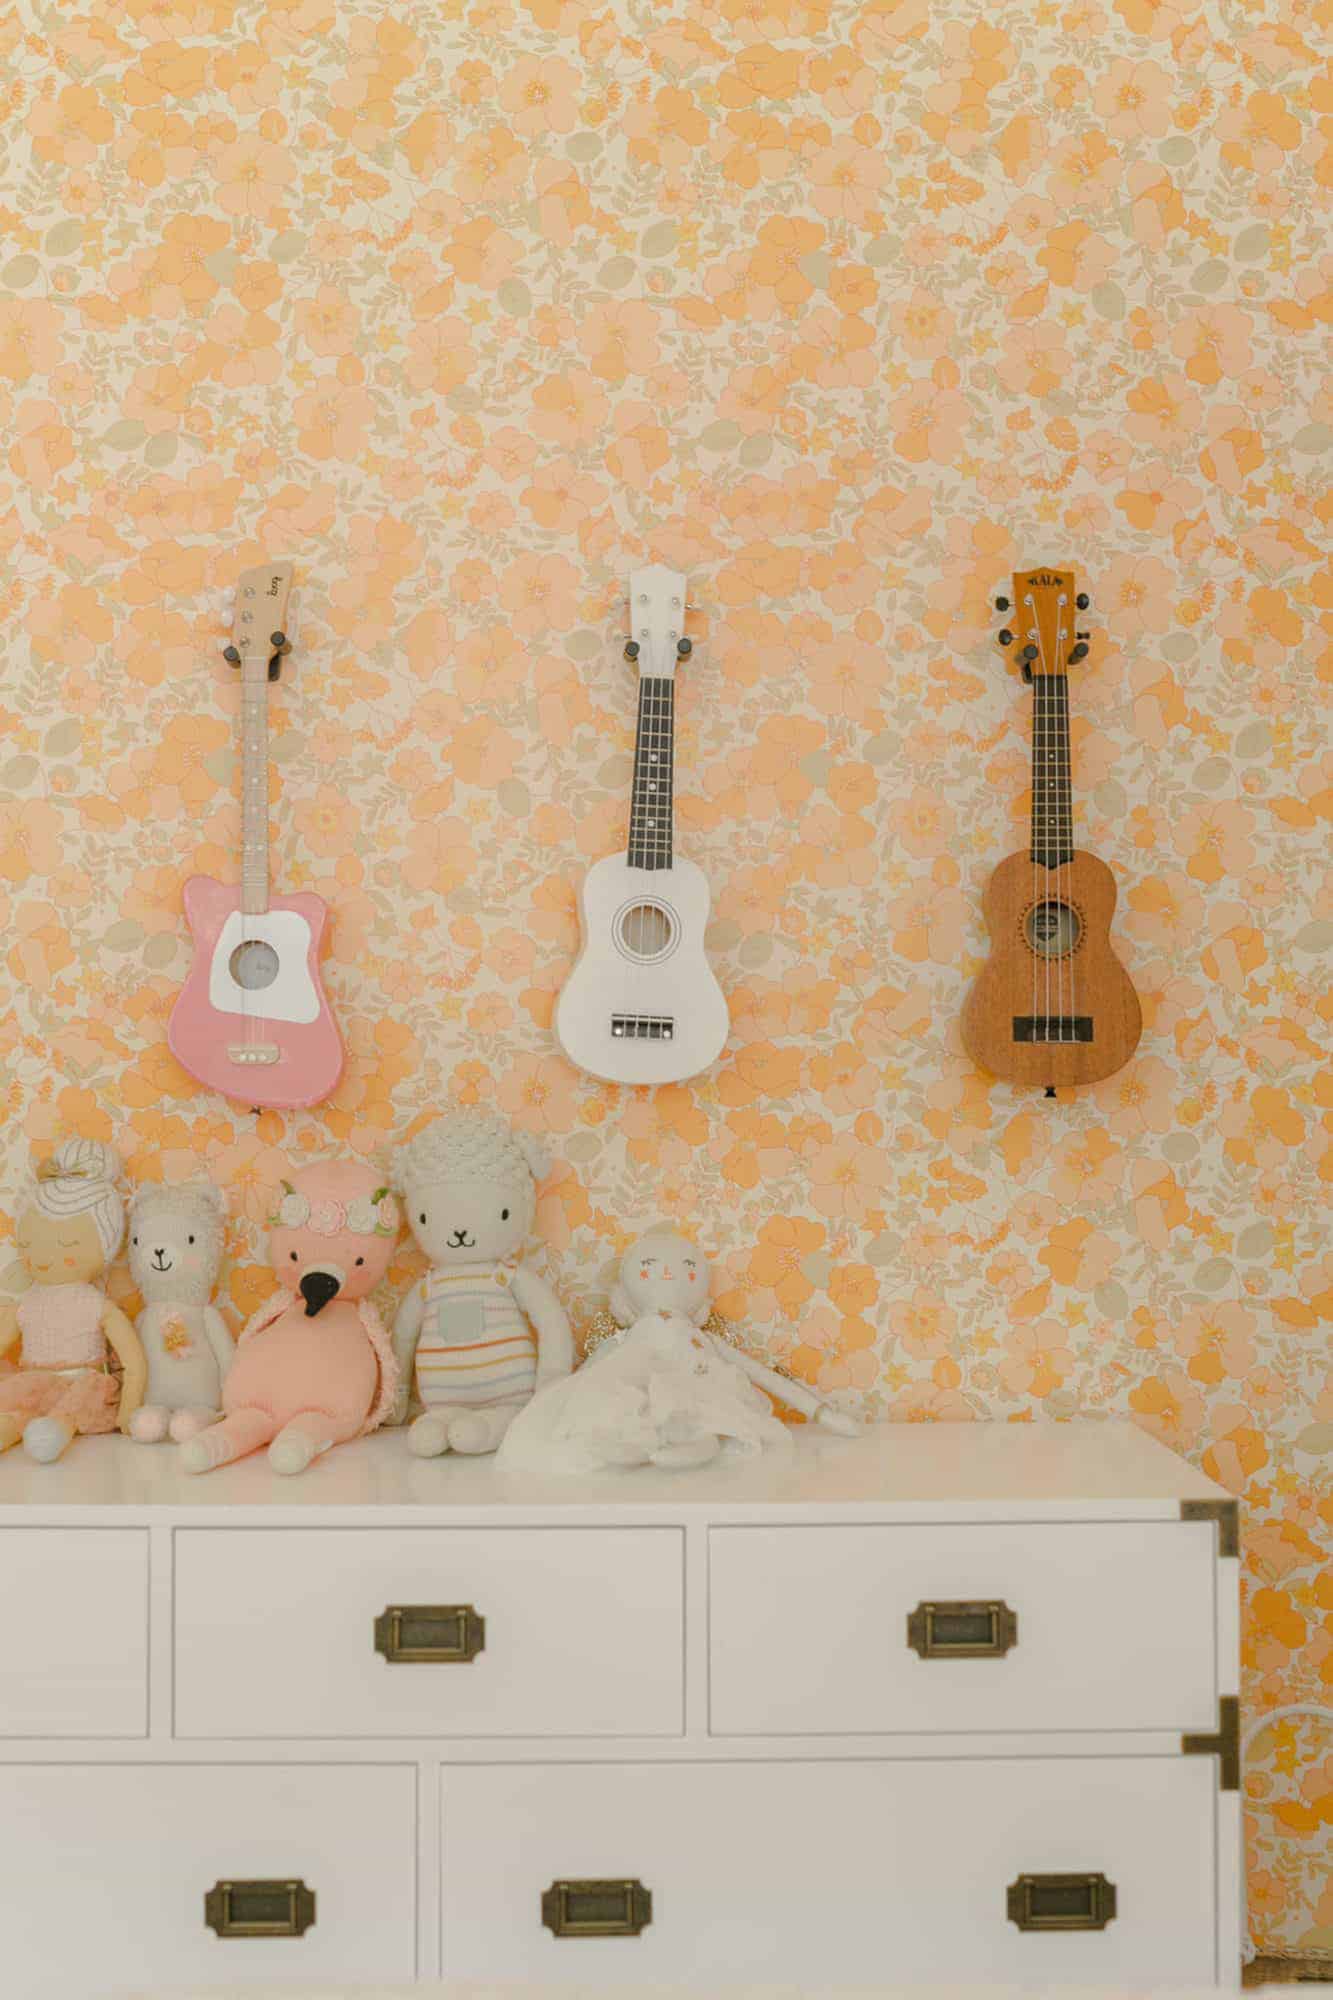 mini guitars on display in kid's room